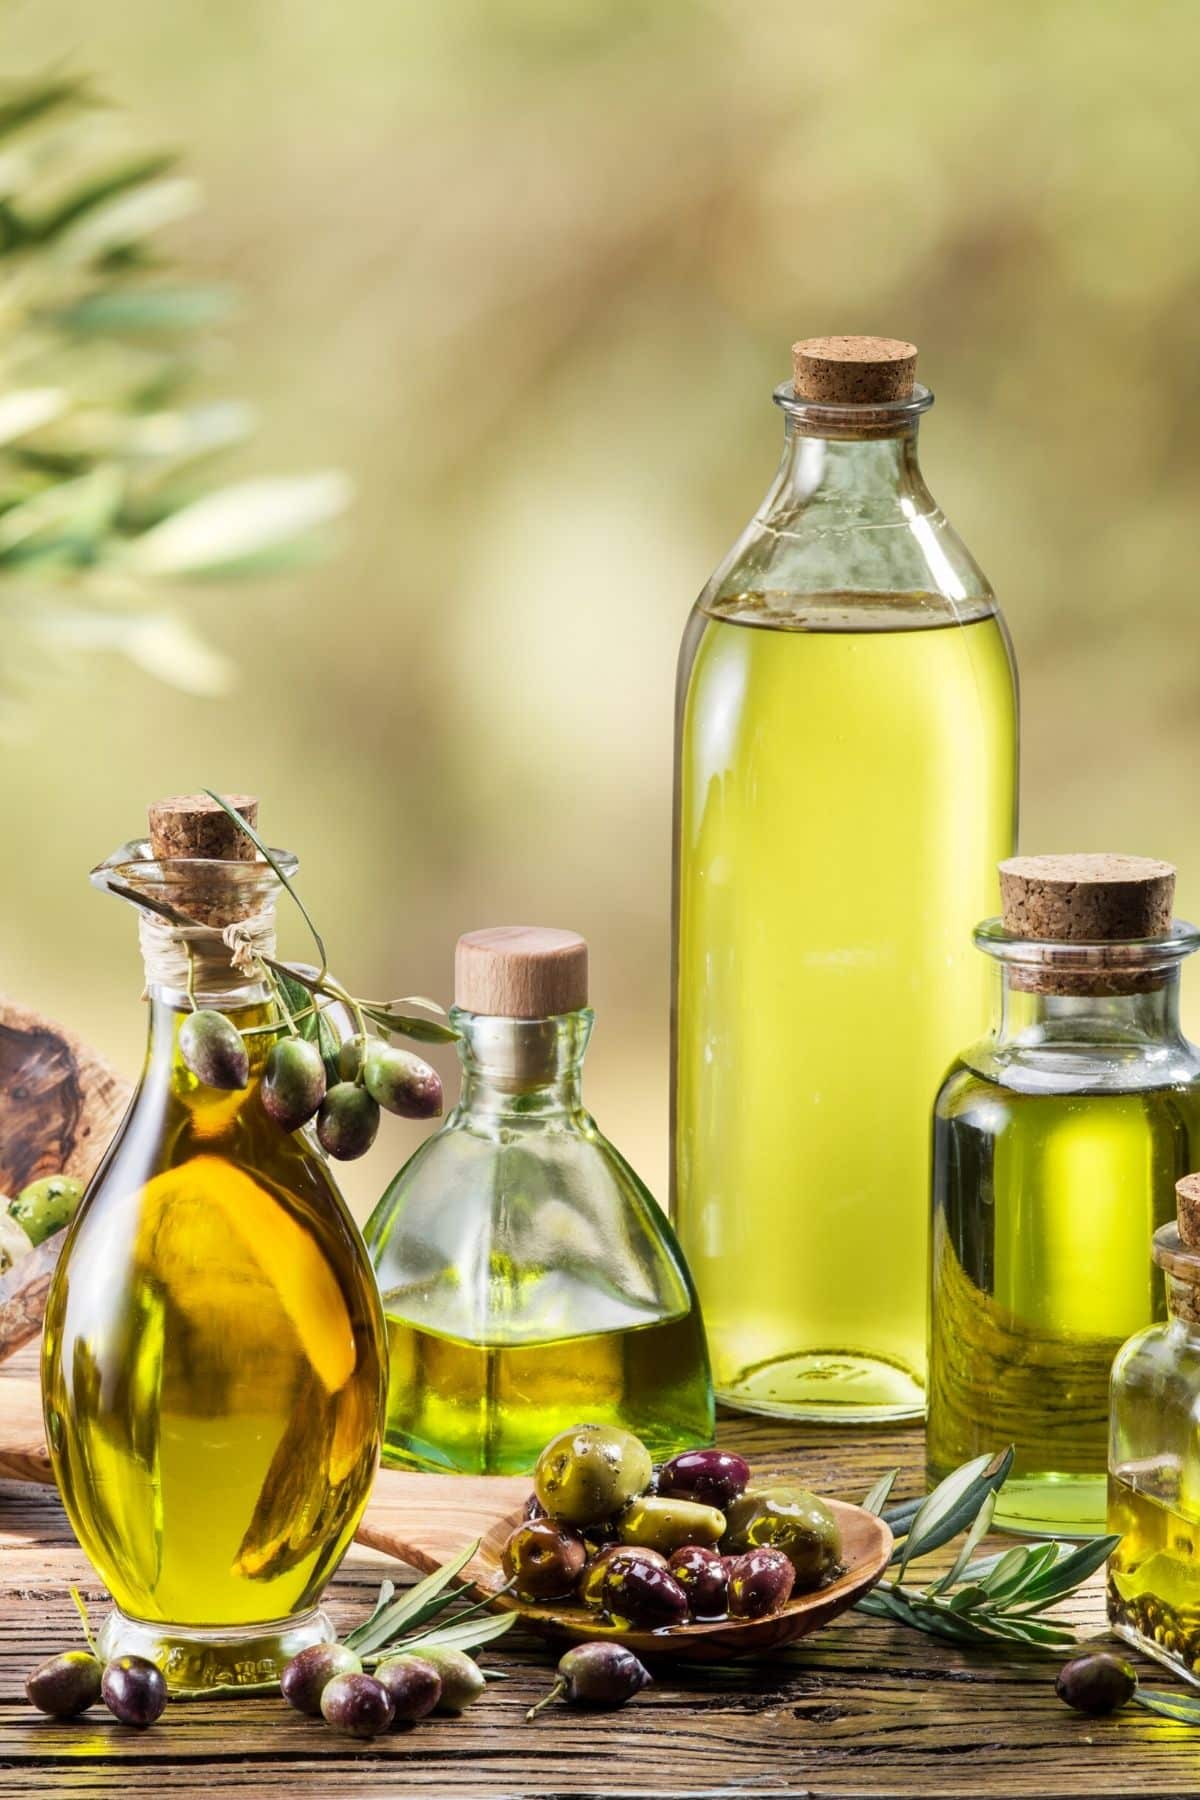 jars of olive oil